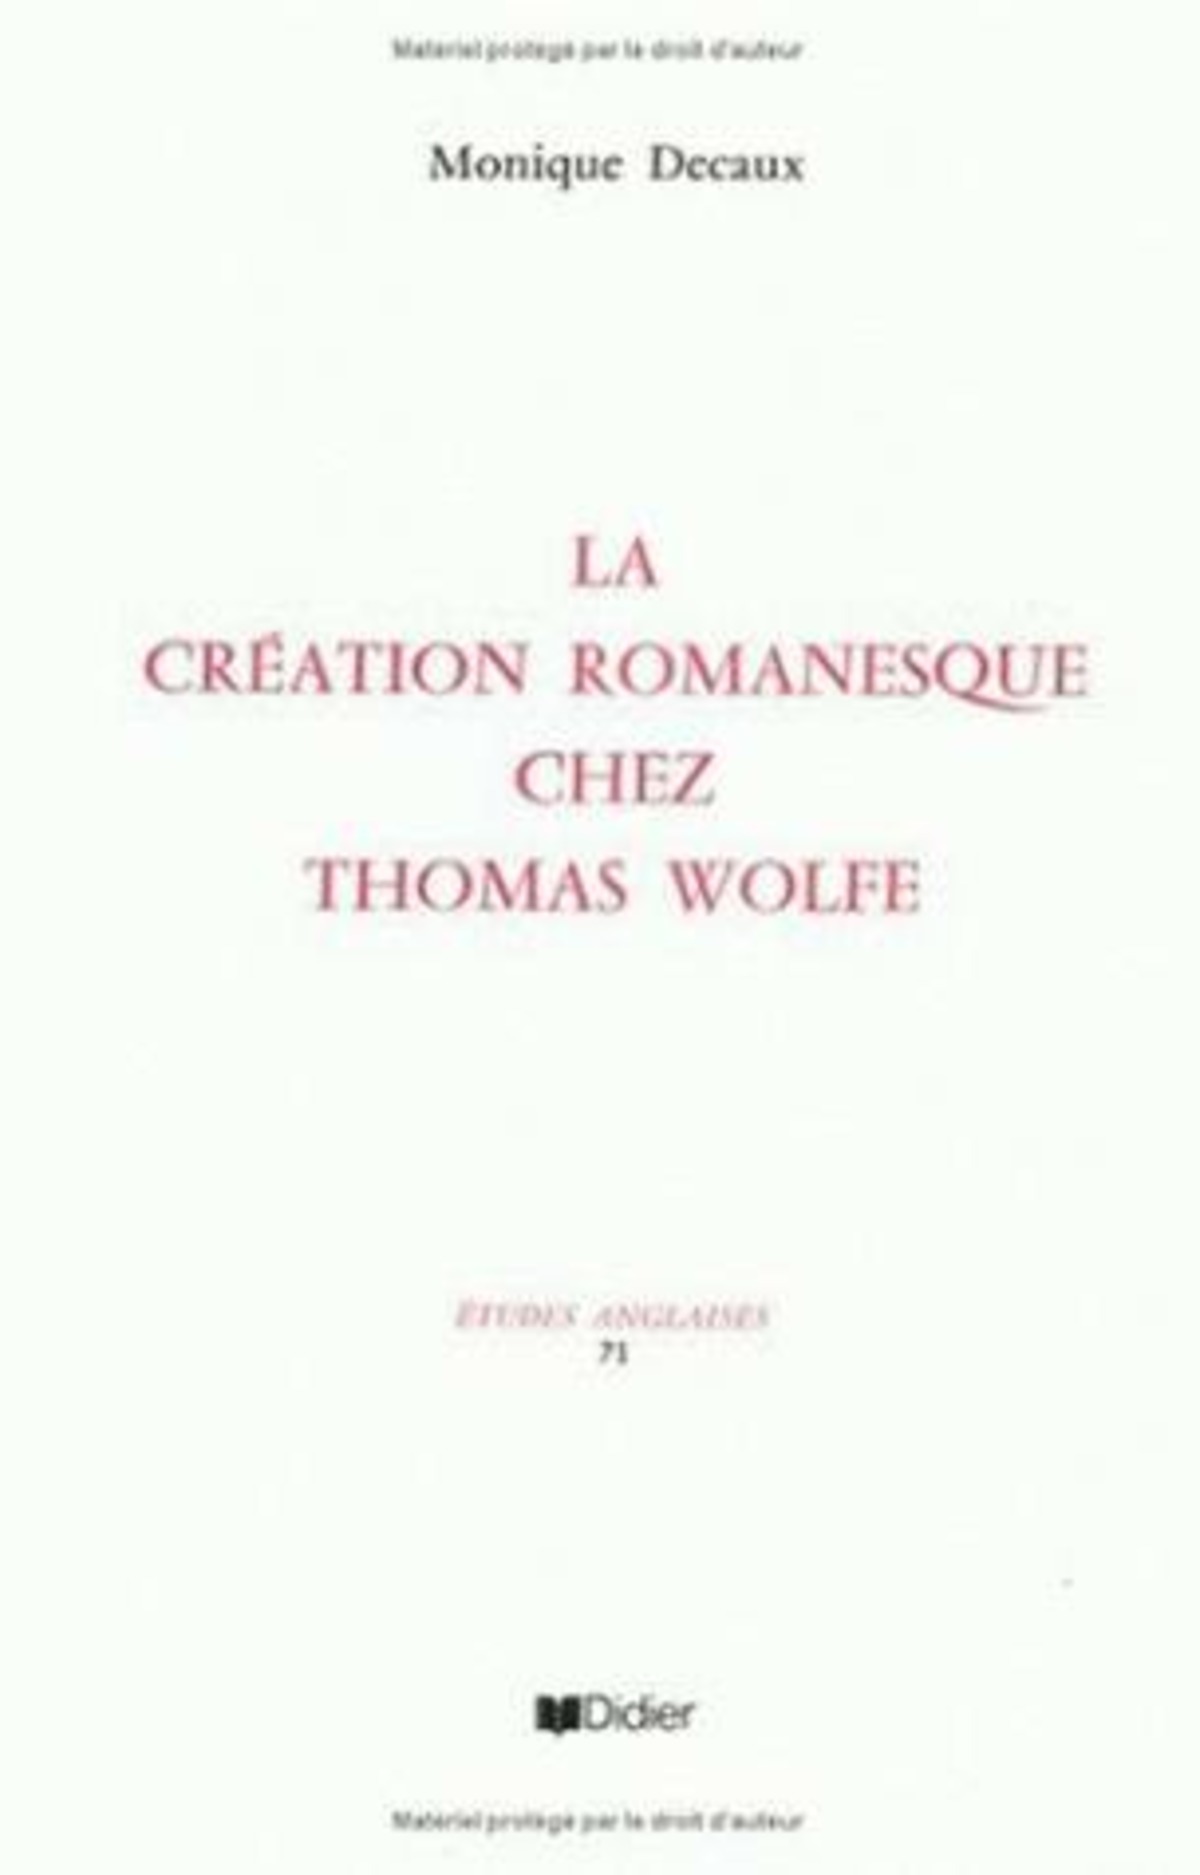 La Création romanesque chez Thomas Wolfe